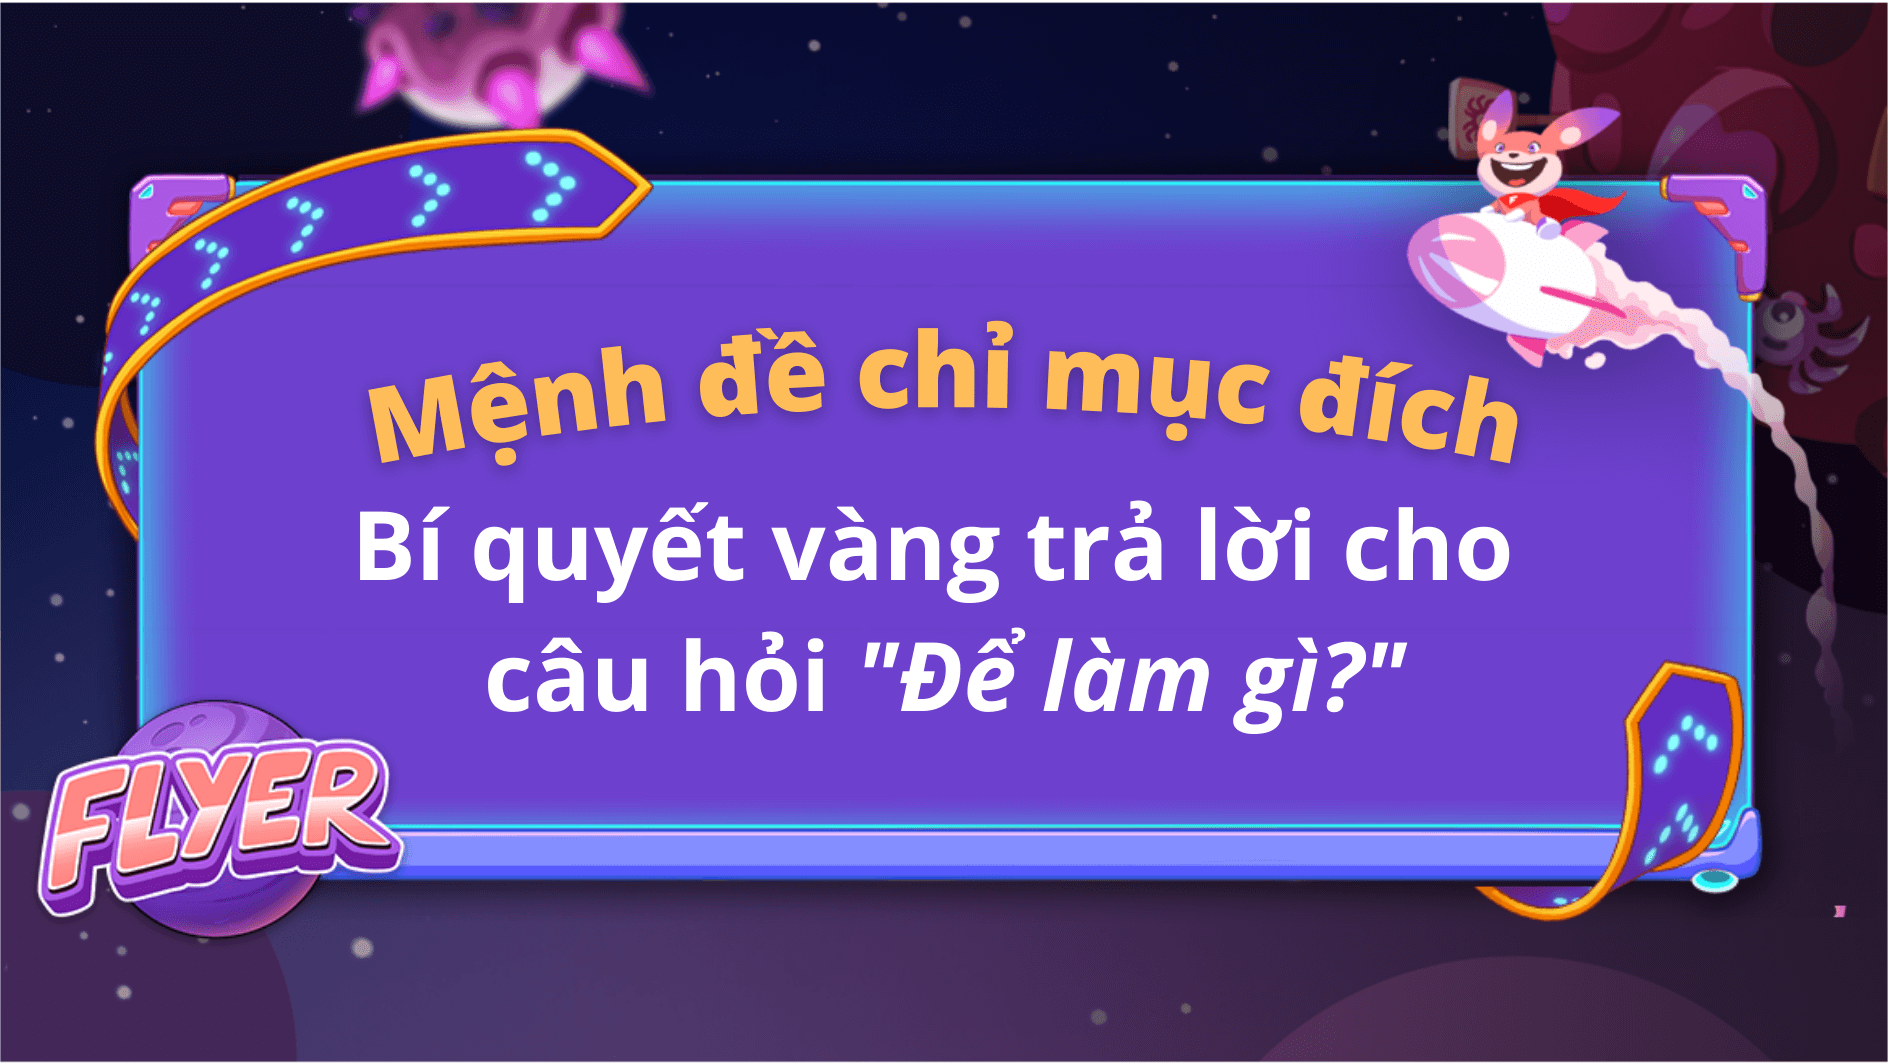 Giải thích mệnh đề chỉ mục đích trong tiếng Việt là gì?